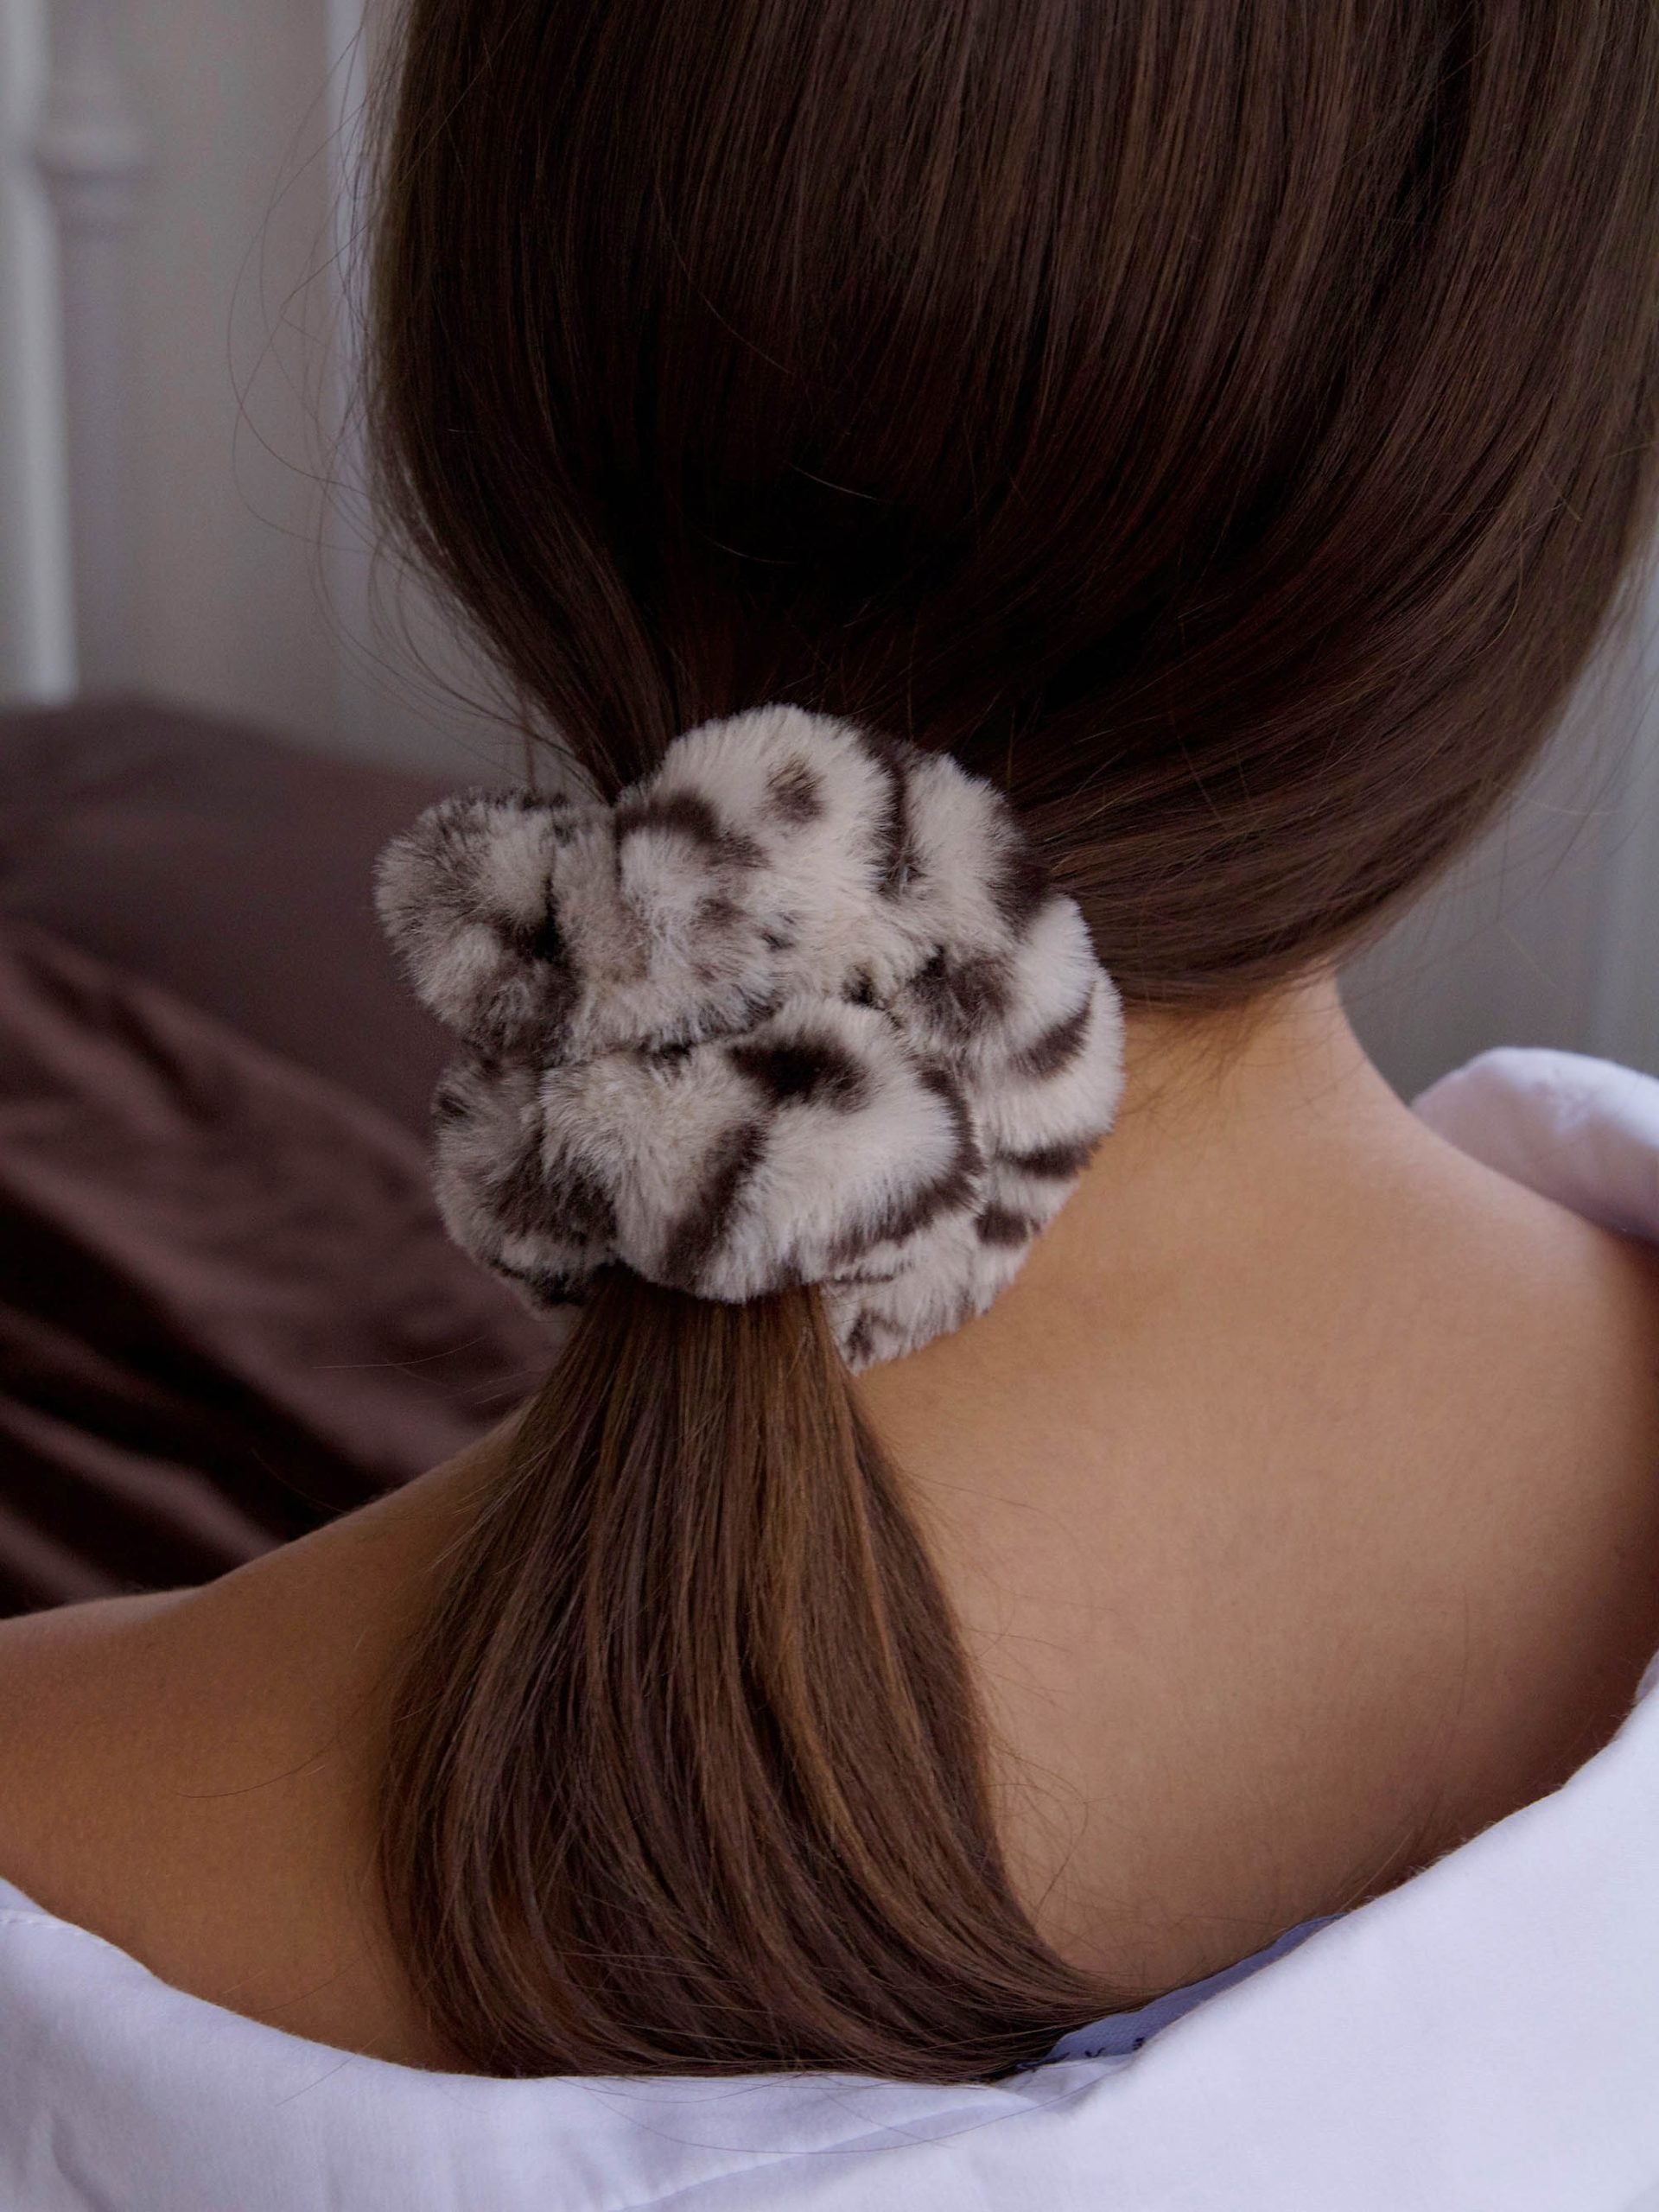 גב אישה עם גומיית סקראנצ'י בצבע מנומר על שערה